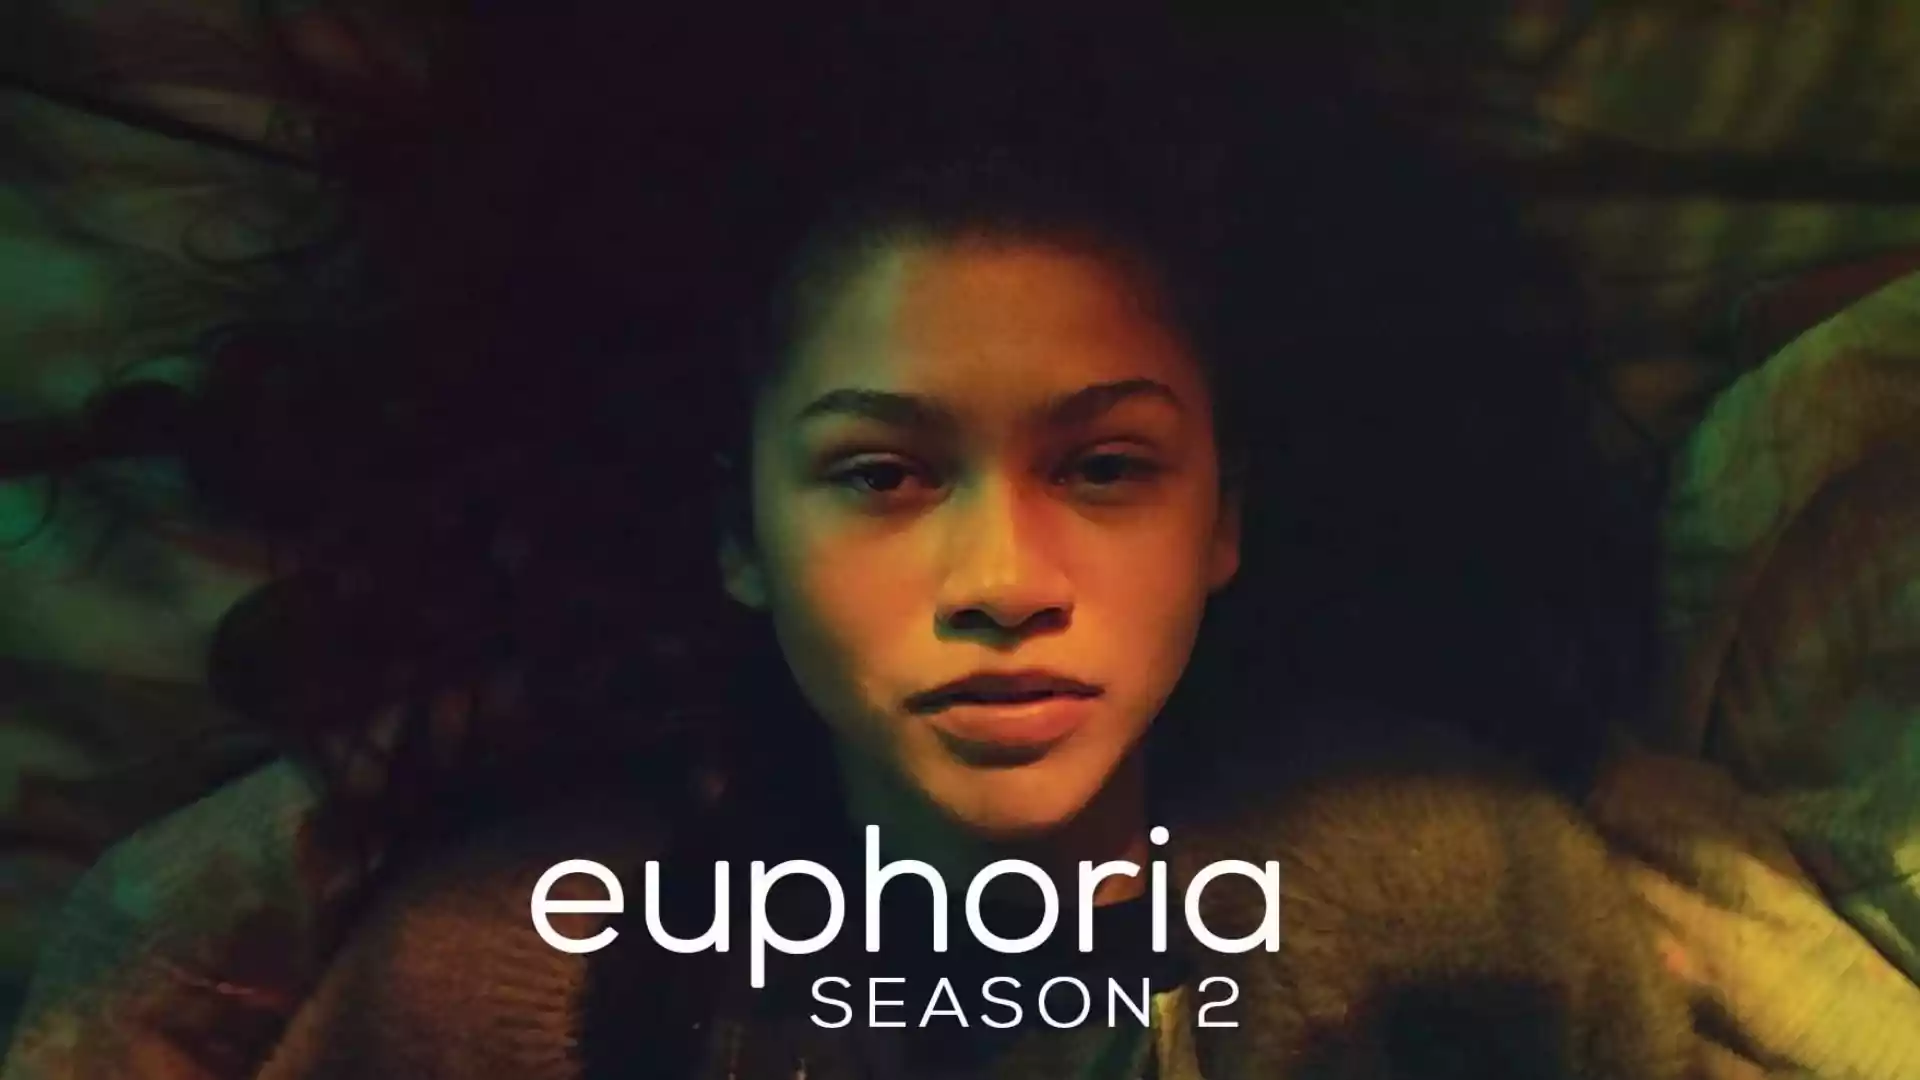 Euphoria Star Cast, Plot, and Review 2022